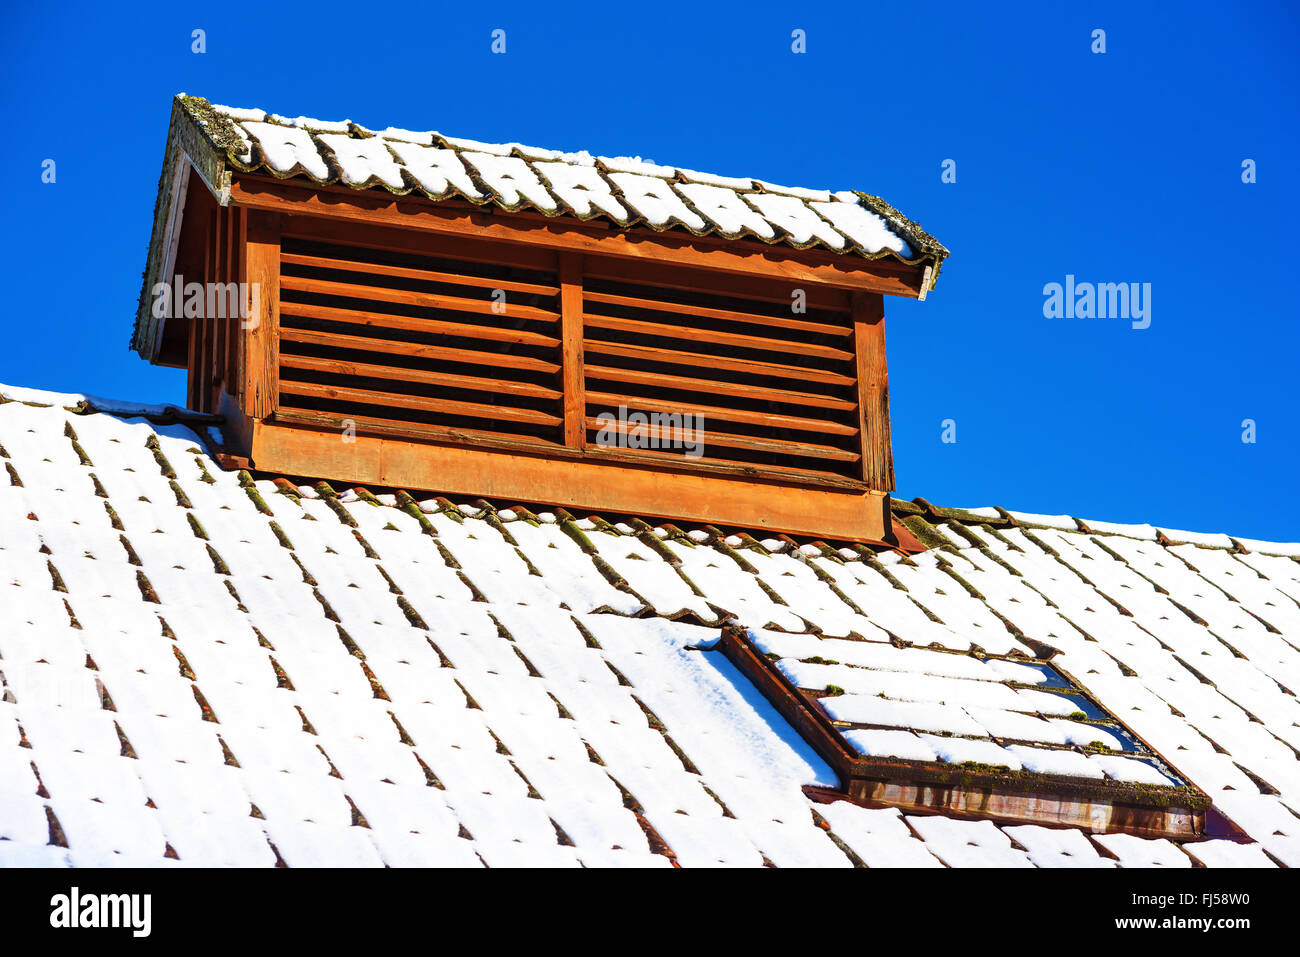 Eine Air Vent Abdeckung auf dem Dach gebaut, um ein kleines Haus aussehen. Blauen Himmel im Hintergrund. Schnee am Dach. Stockfoto